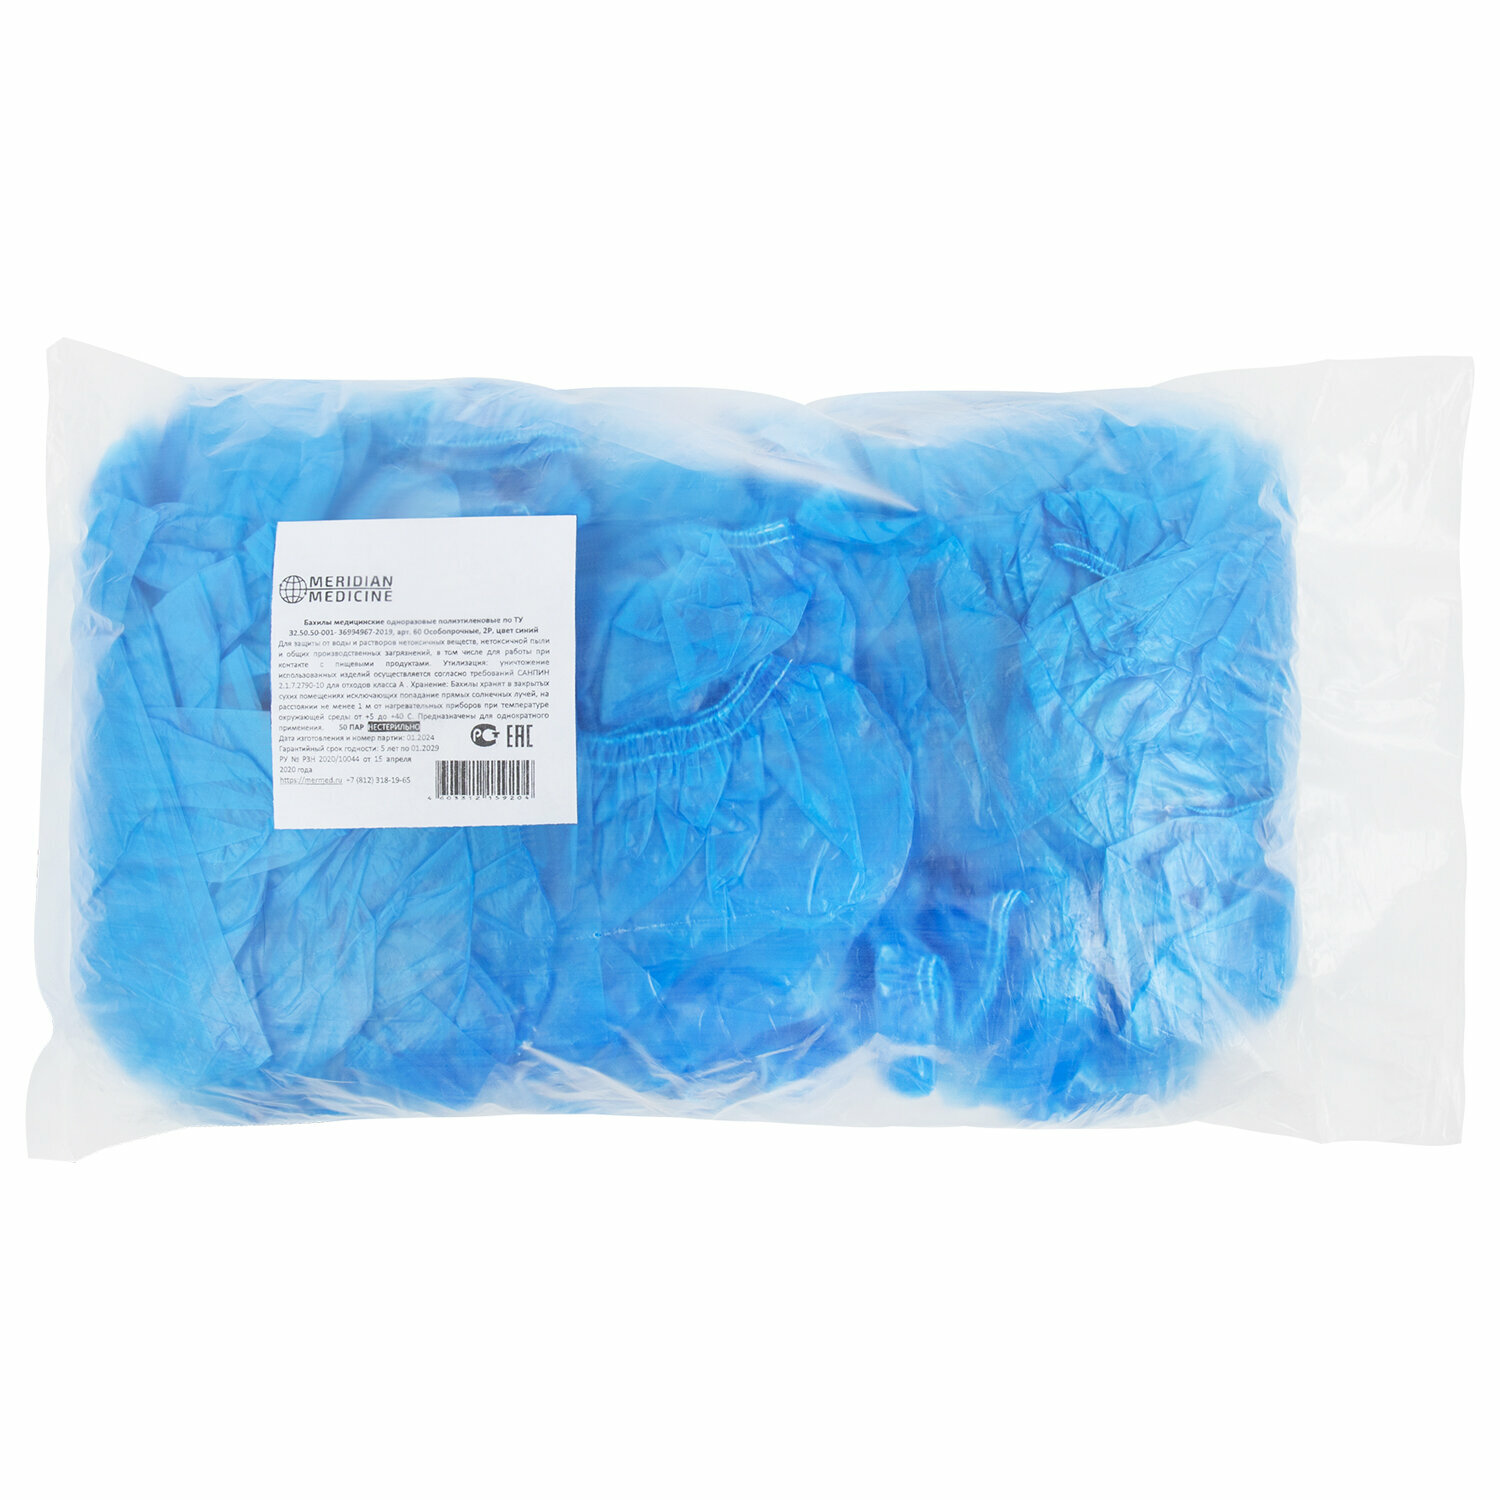 Бахилы MERIDIAN особо прочные, 6 грамм, синие, комплект 100 штук (50 пар), 40х15 см, 55 мкм упаковка 3 шт.